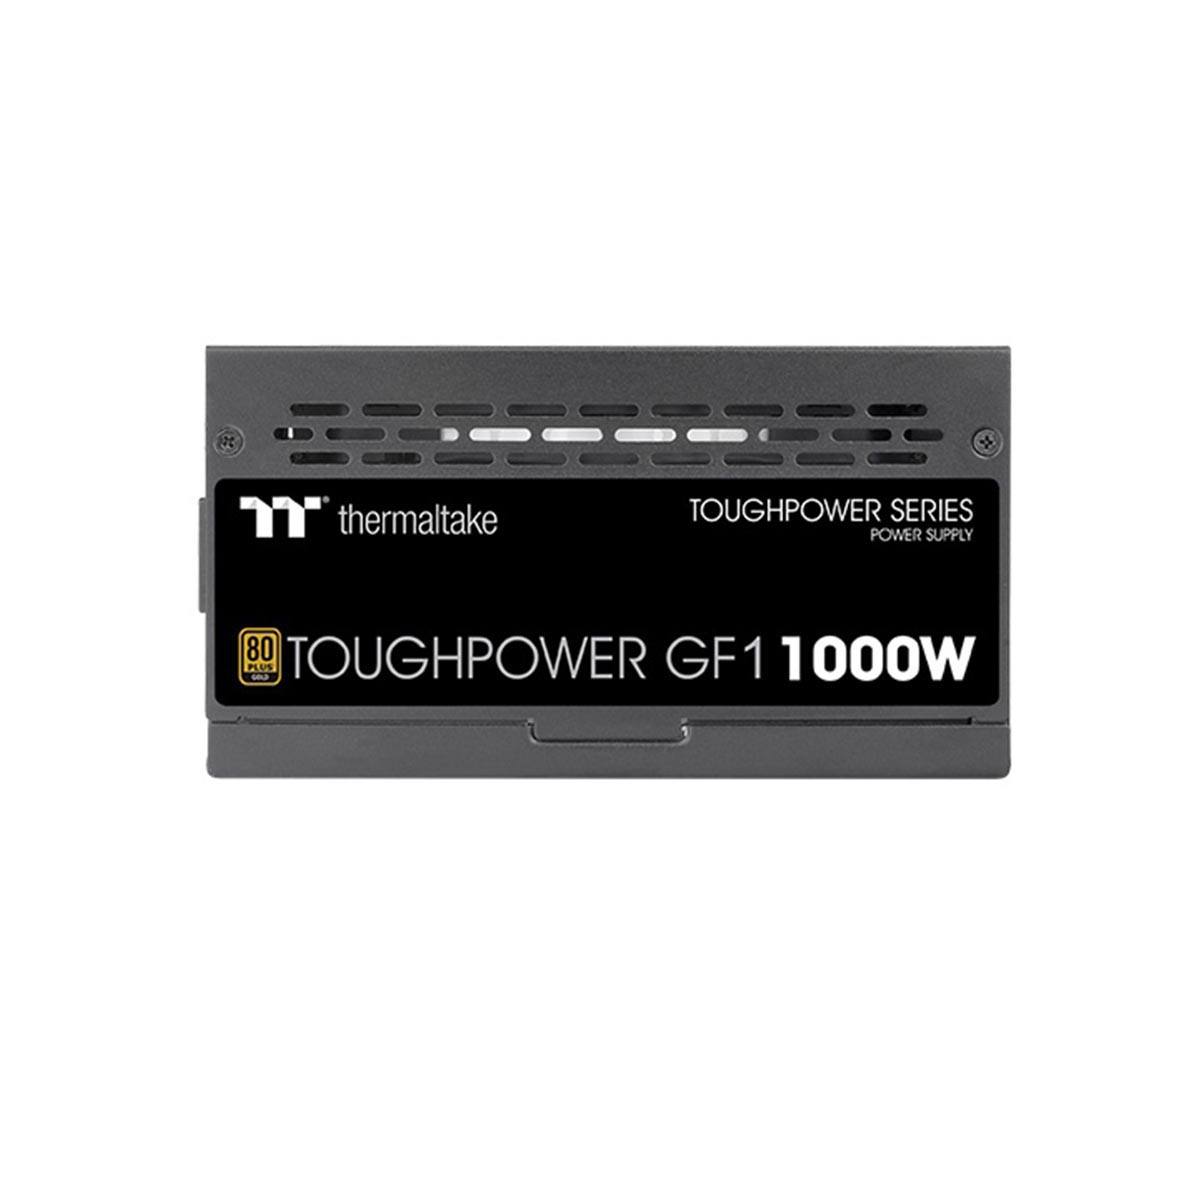 Nguồn Thermaltake Toughpower GF3 1000W | 80 Plus Gold - Full Modular